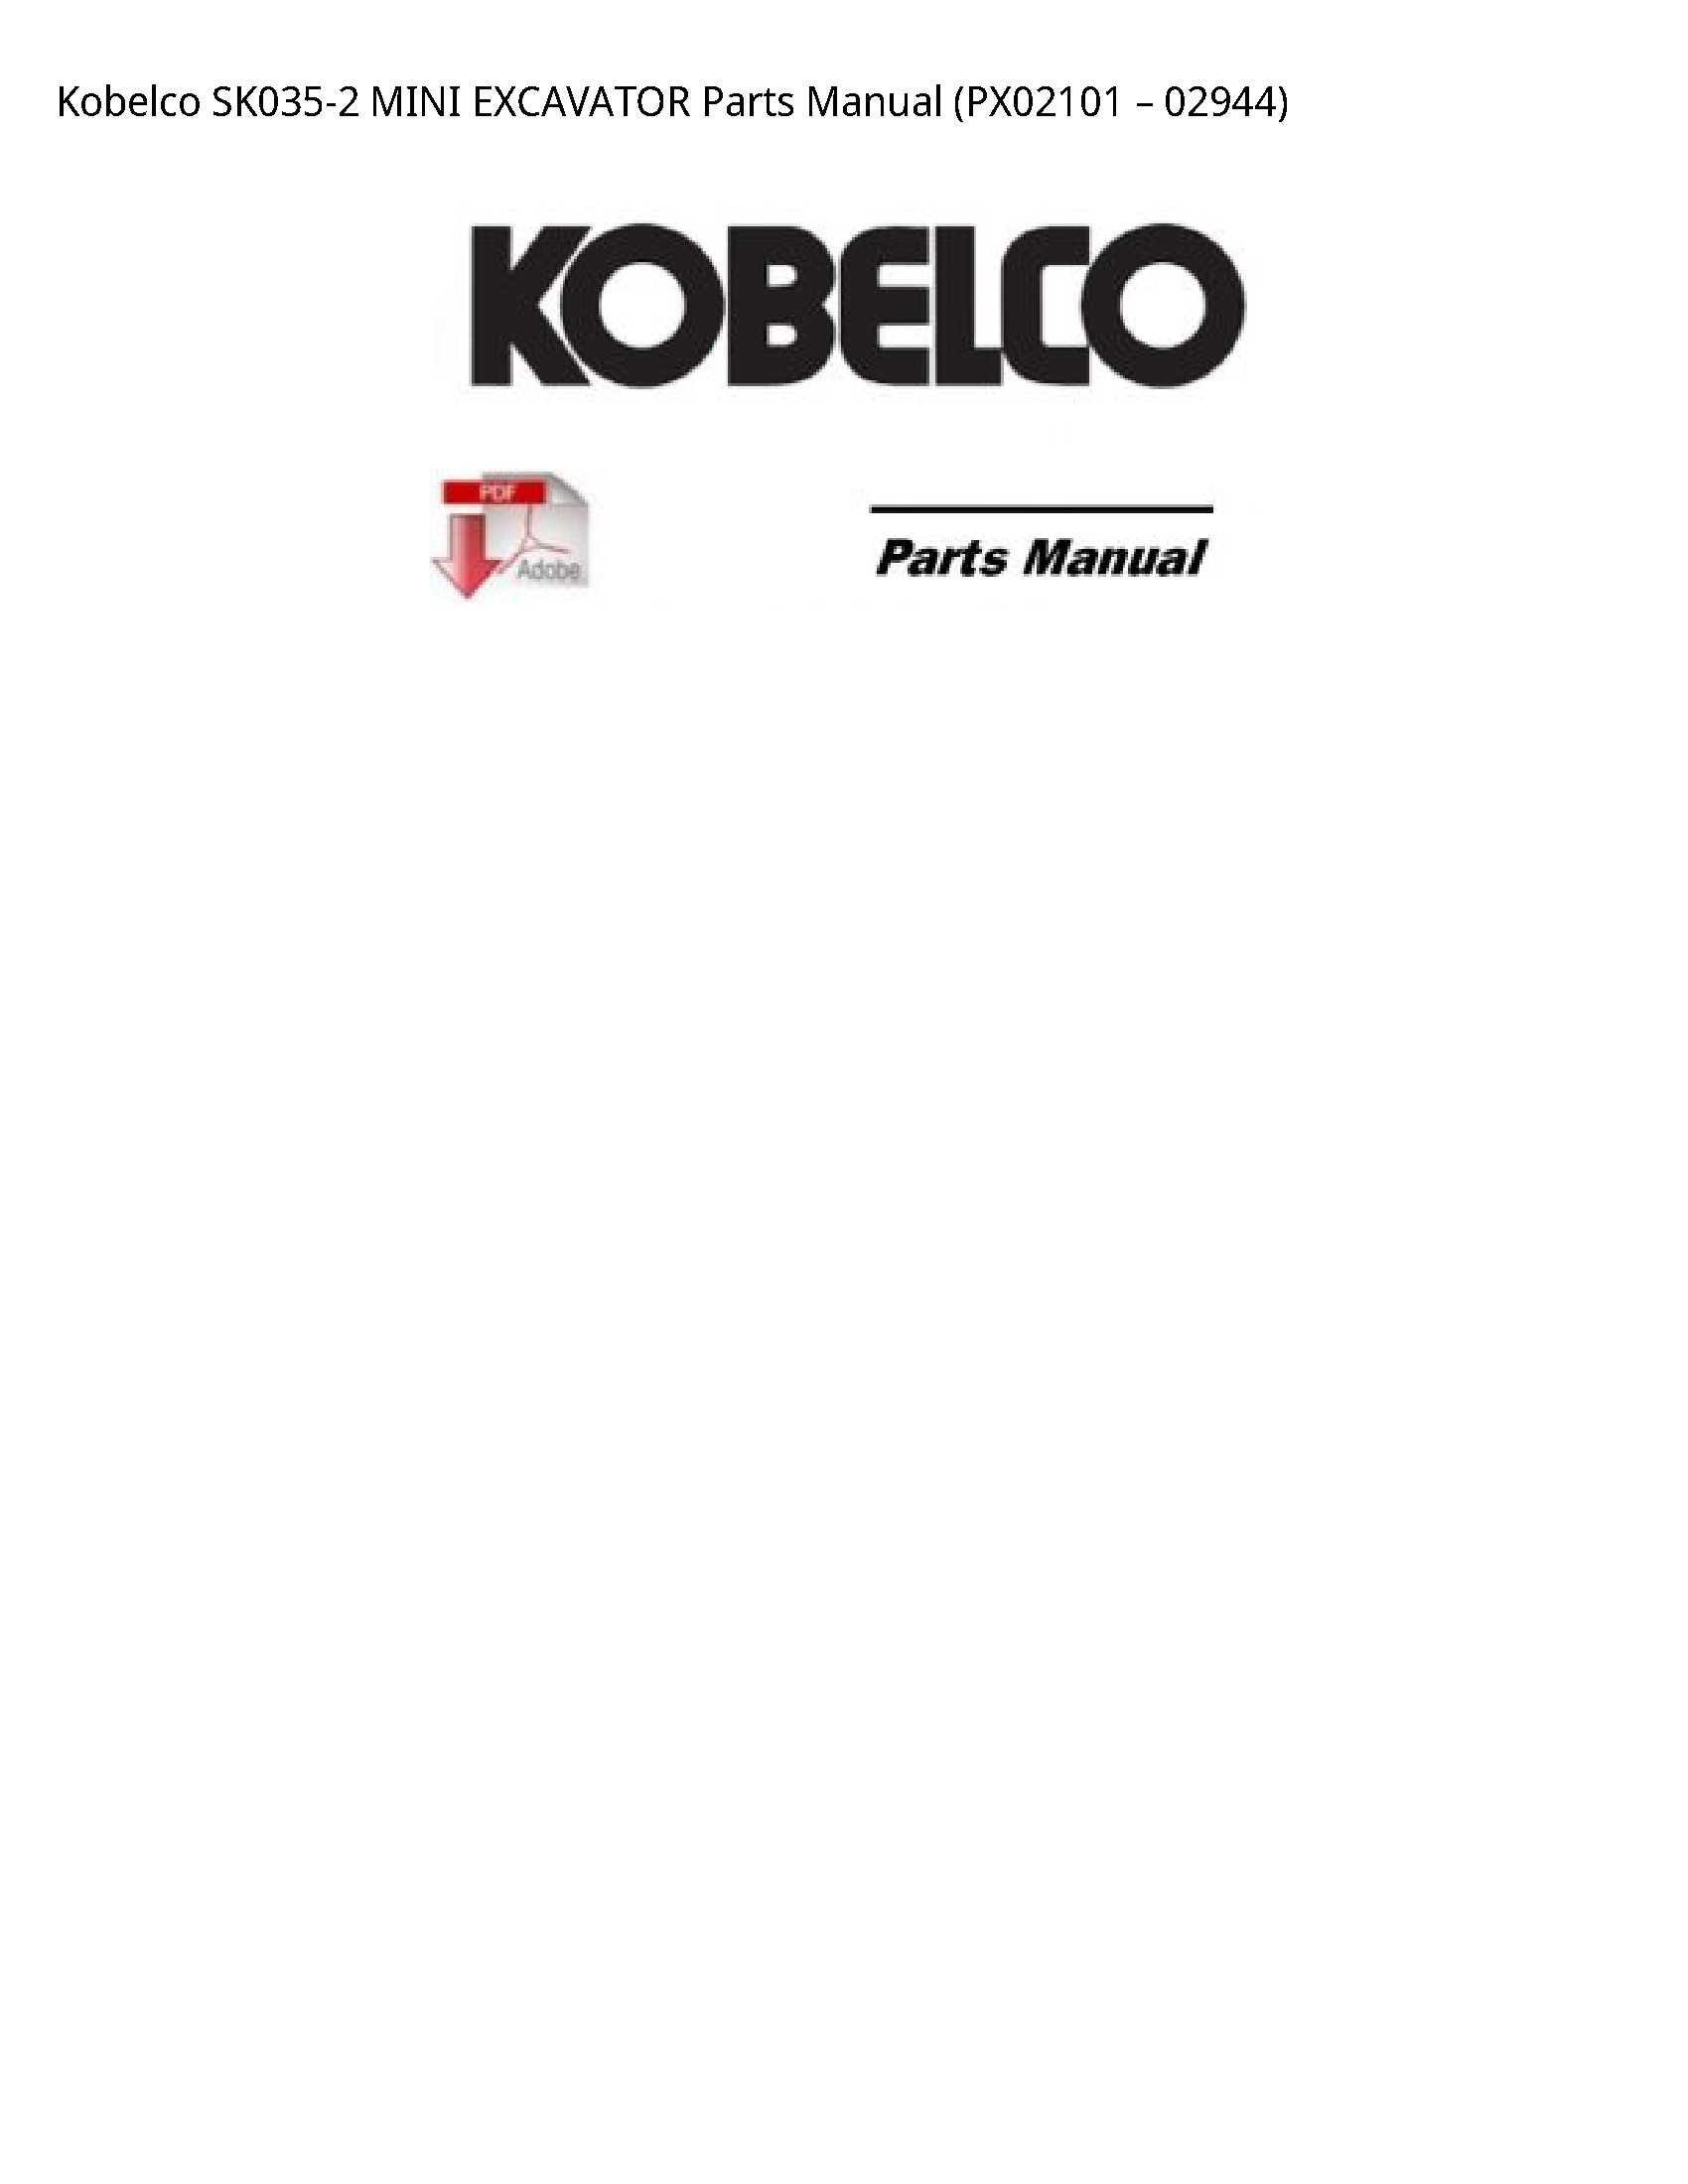 Kobelco SK035-2 MINI EXCAVATOR Parts manual